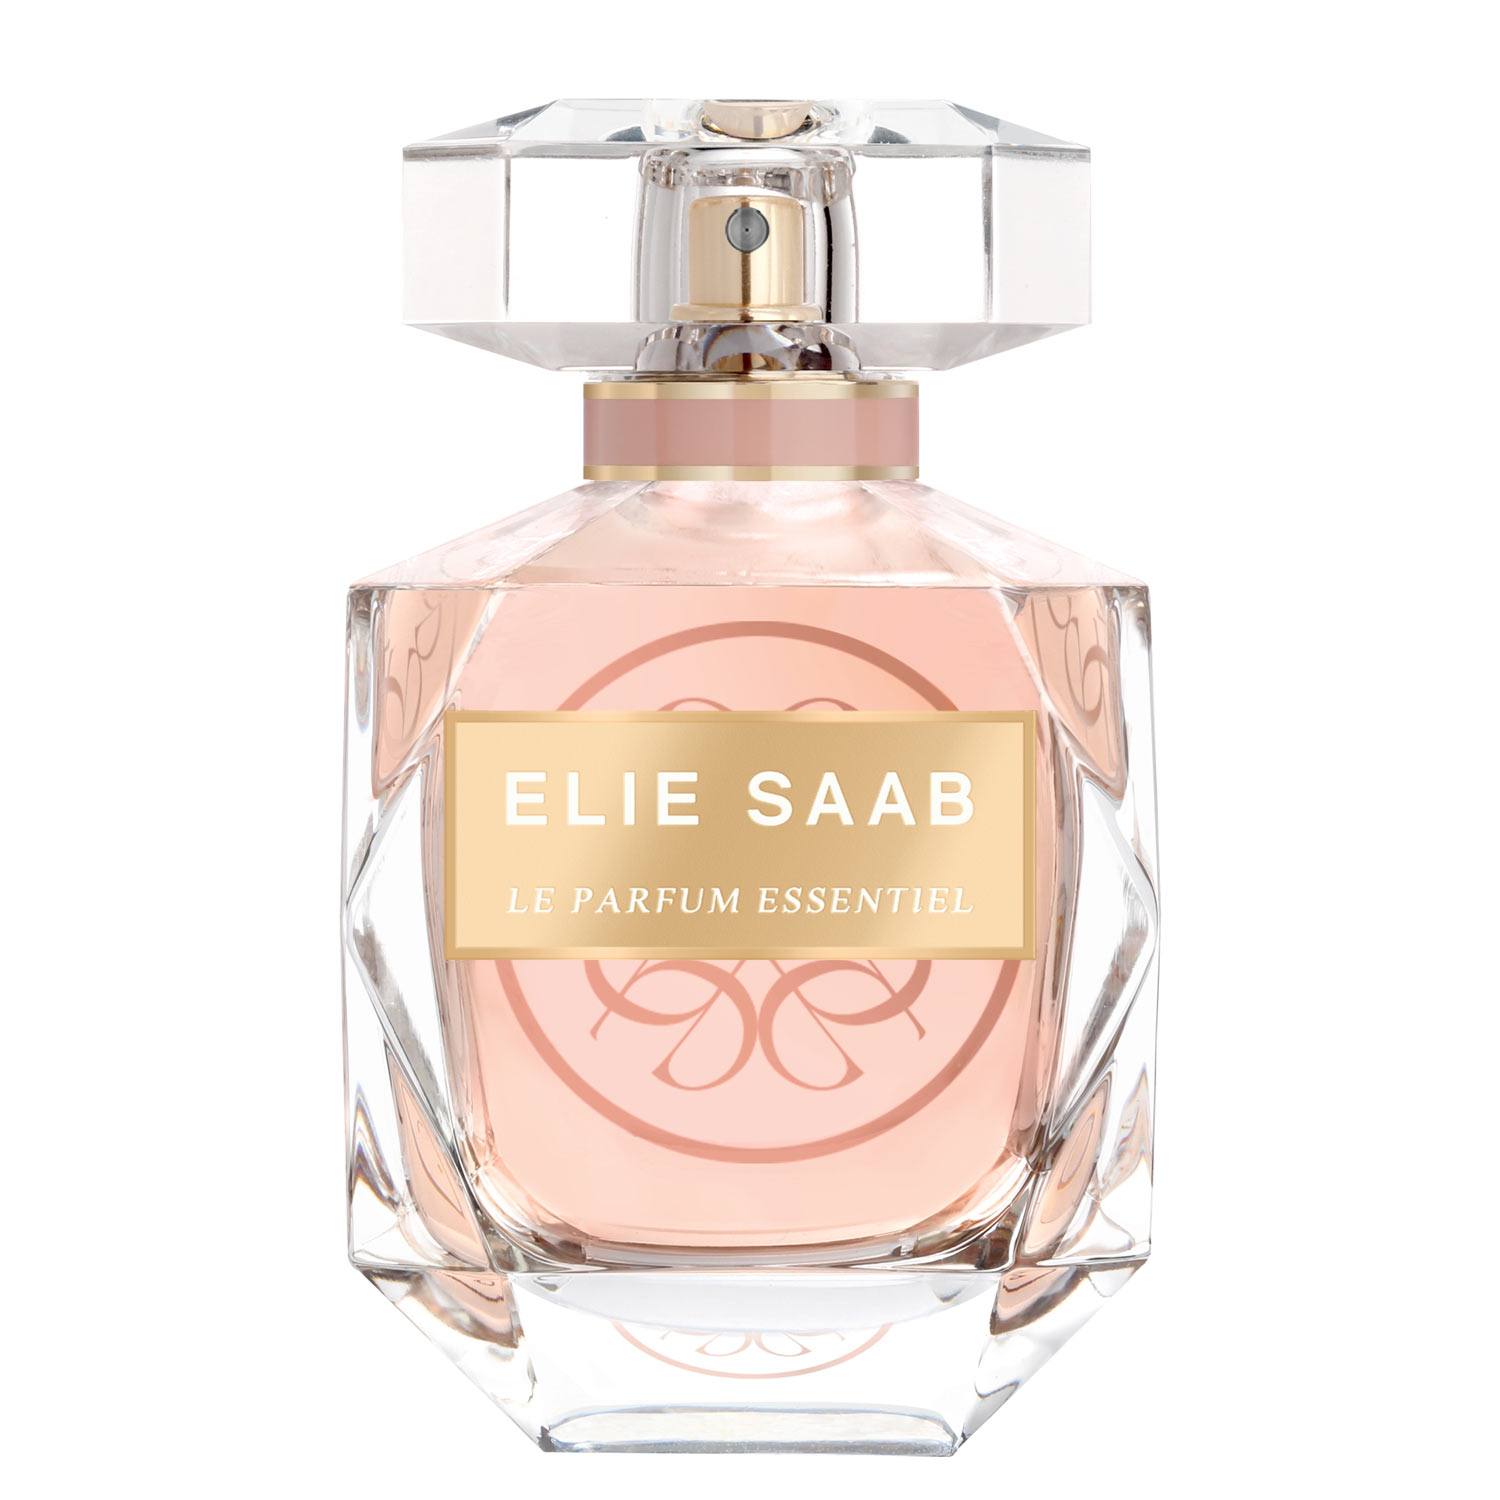 Elie Saab Le Parfum Essentiel Elie Saab Image